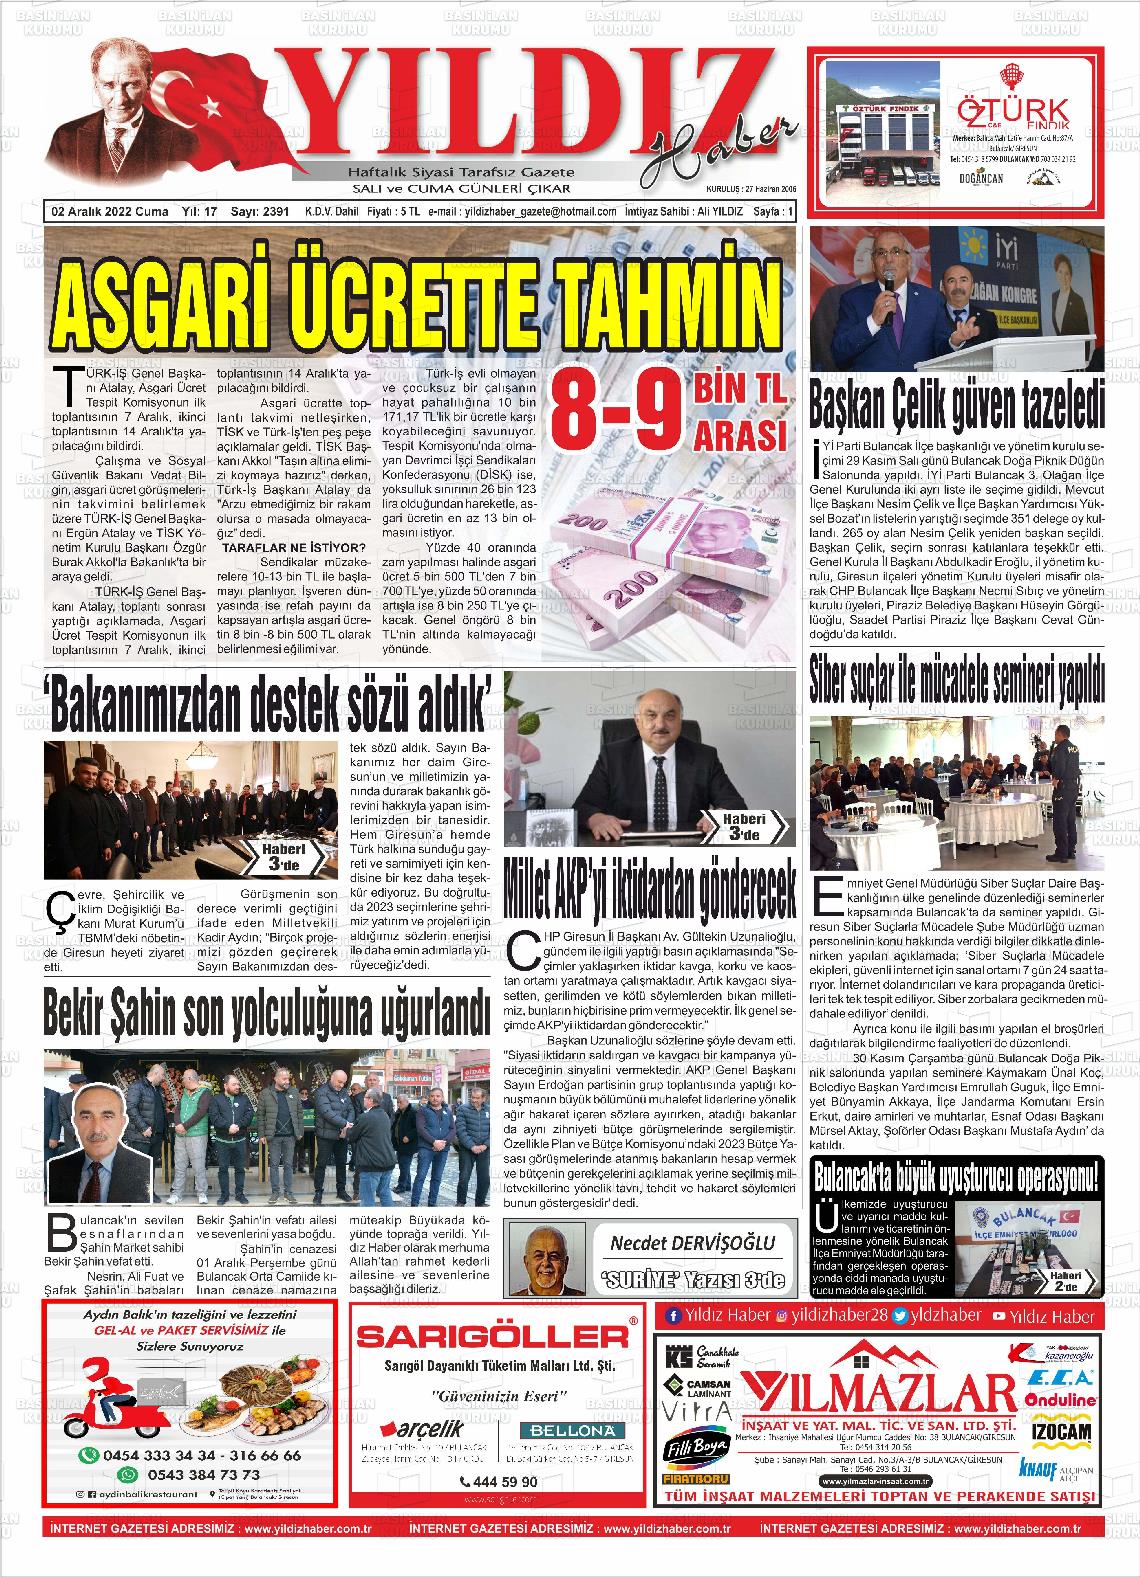 02 Aralık 2022 Yıldız Haber Gazete Manşeti